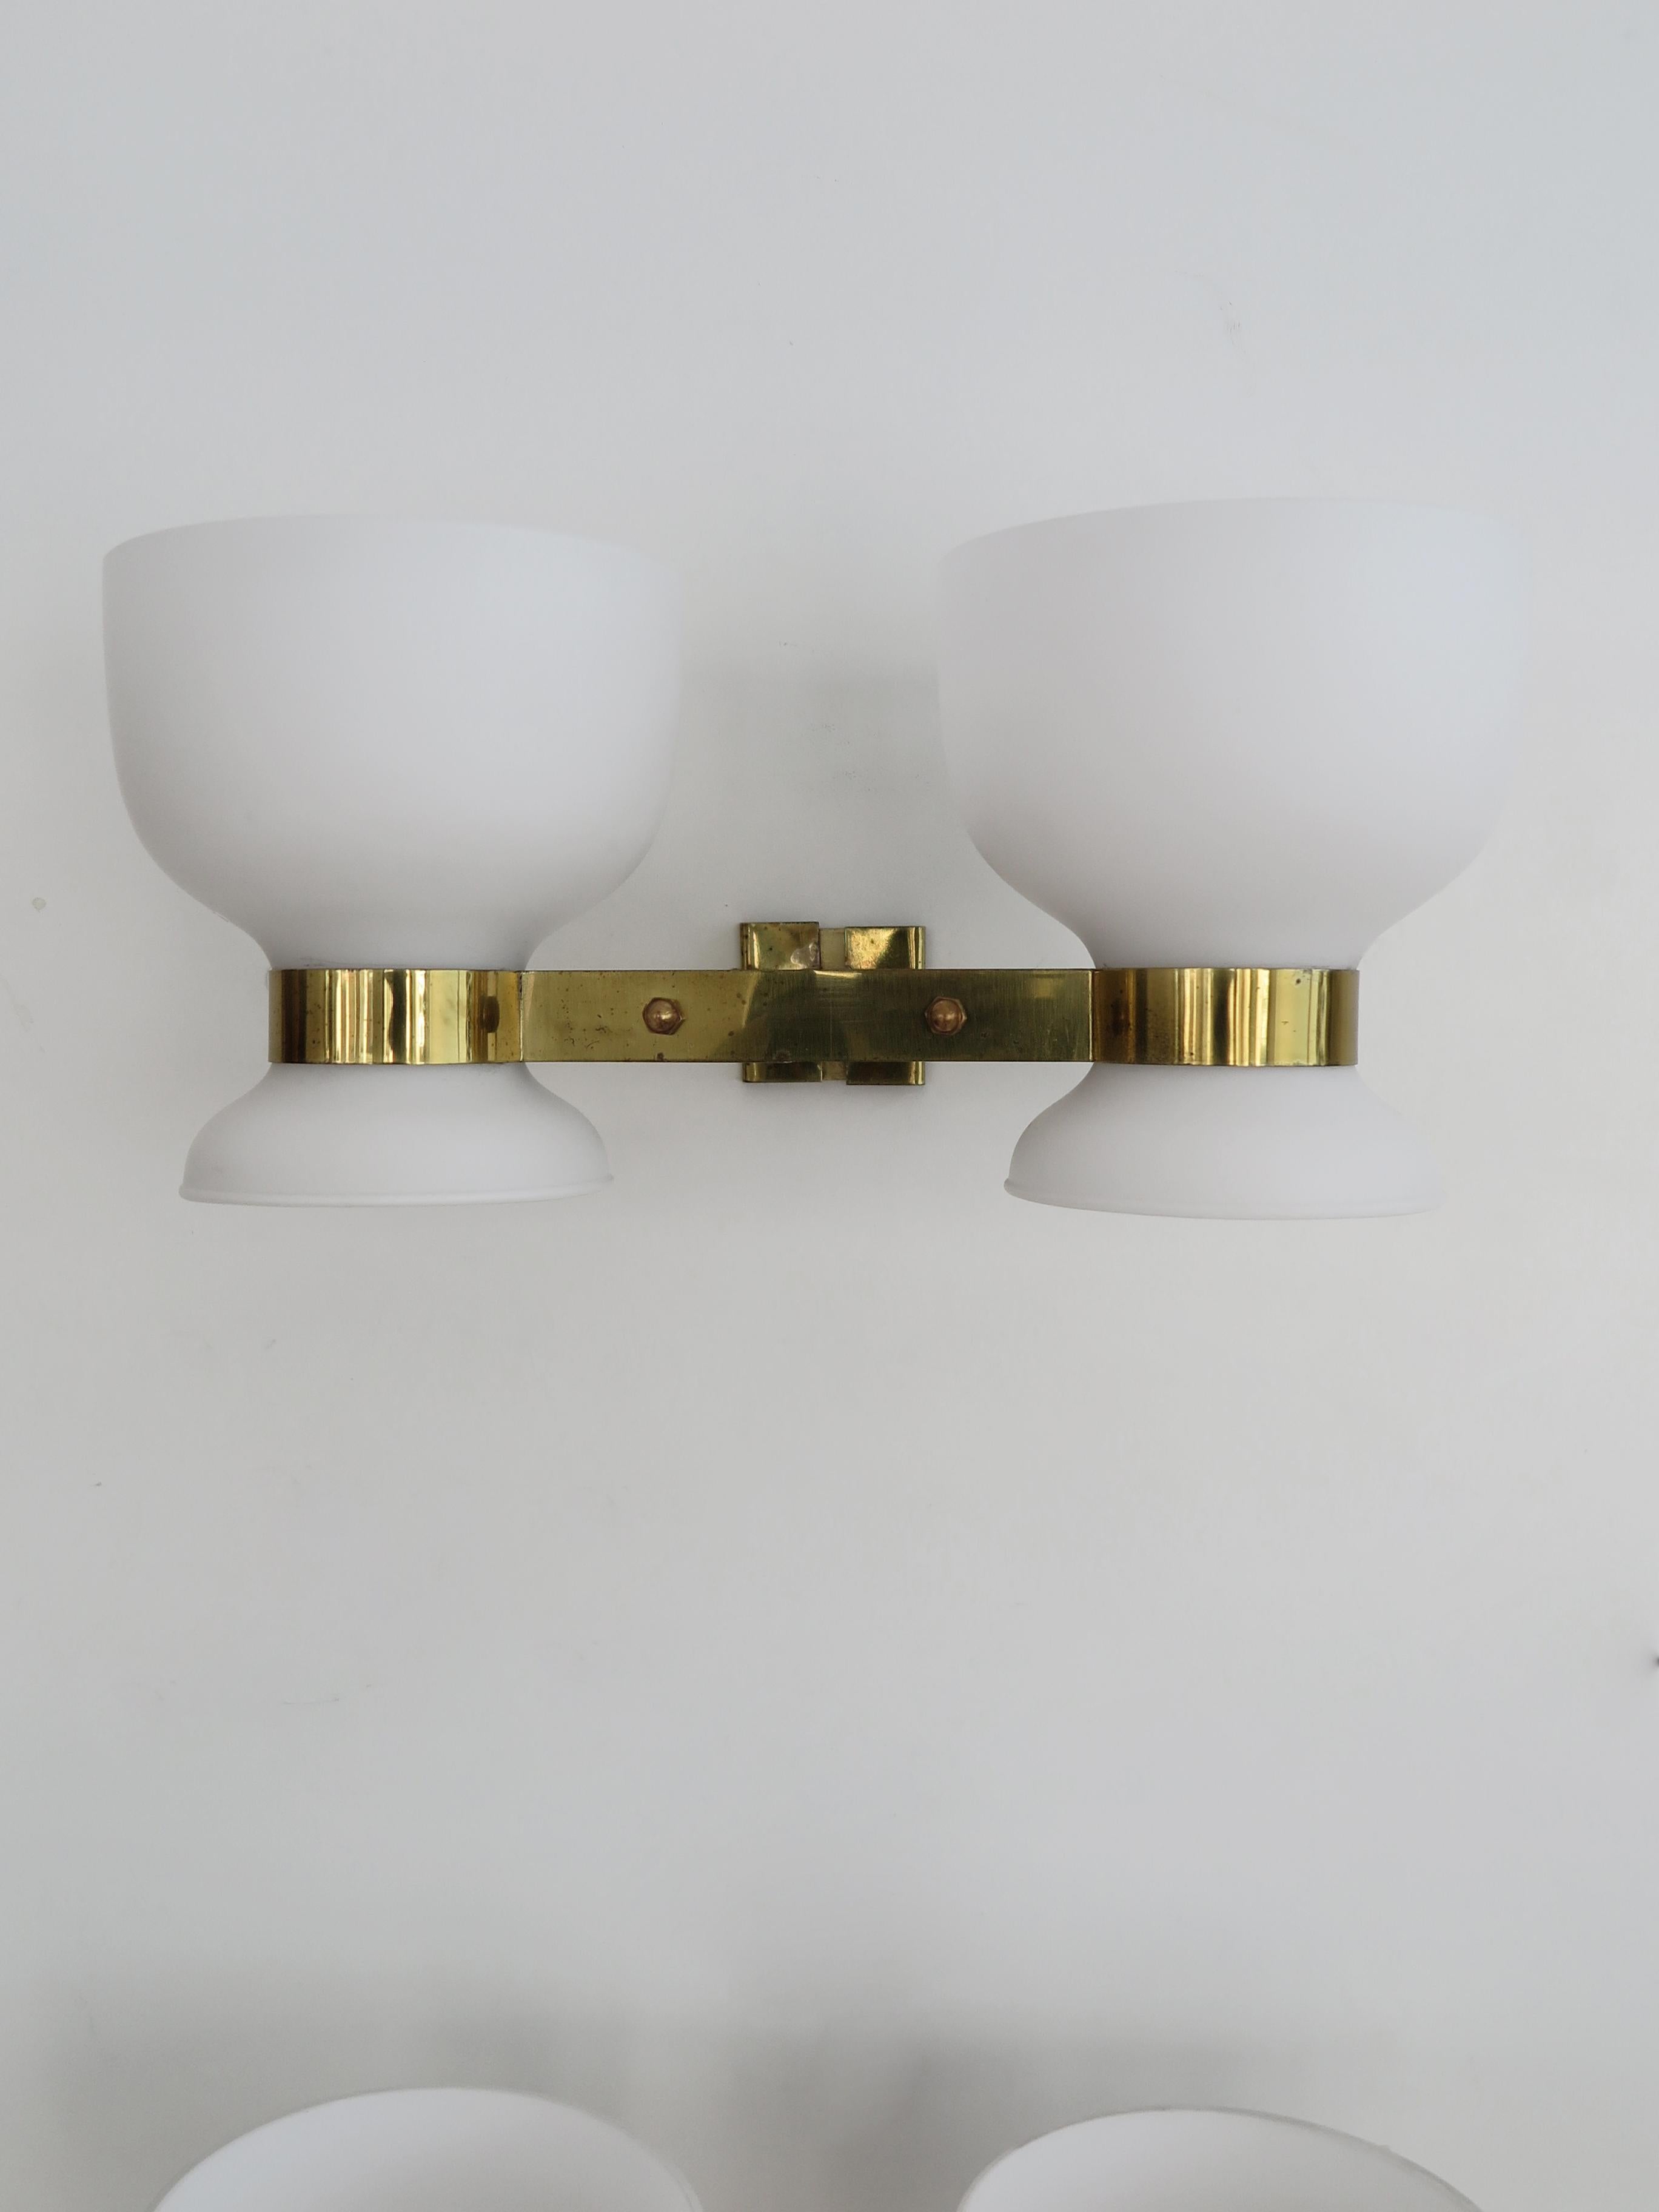 Stilnovo Italian Midcentury Modern Design Brass Glass Sconces Wall Lights 1950s For Sale 4